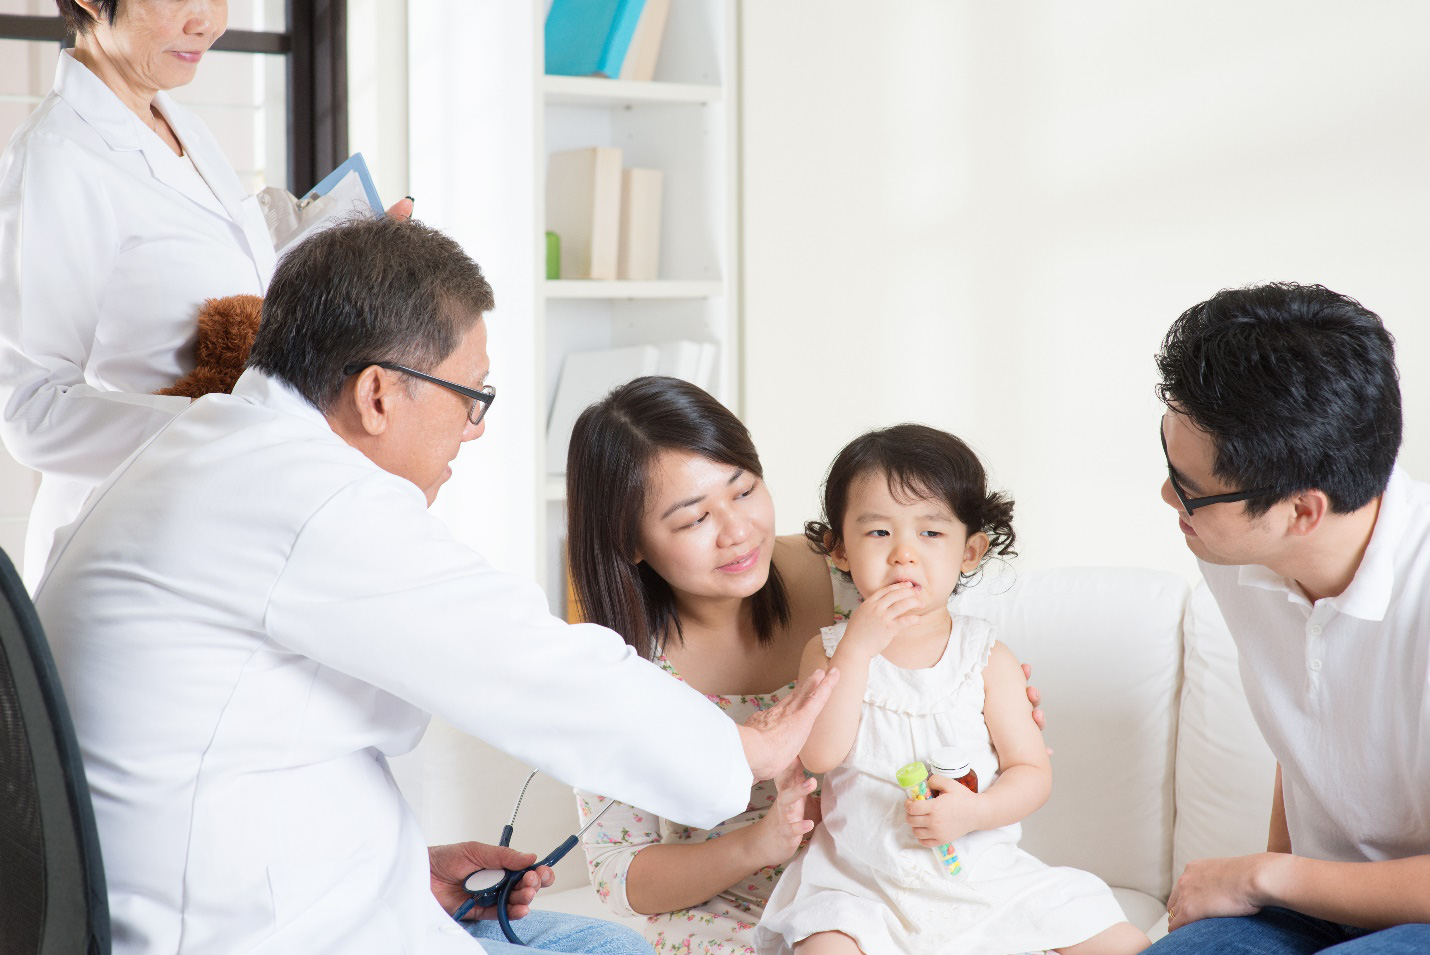 Bảo hiểm phạm vi toàn cầu - cơ hội để người Việt tiếp cận y tế chất lượng cao